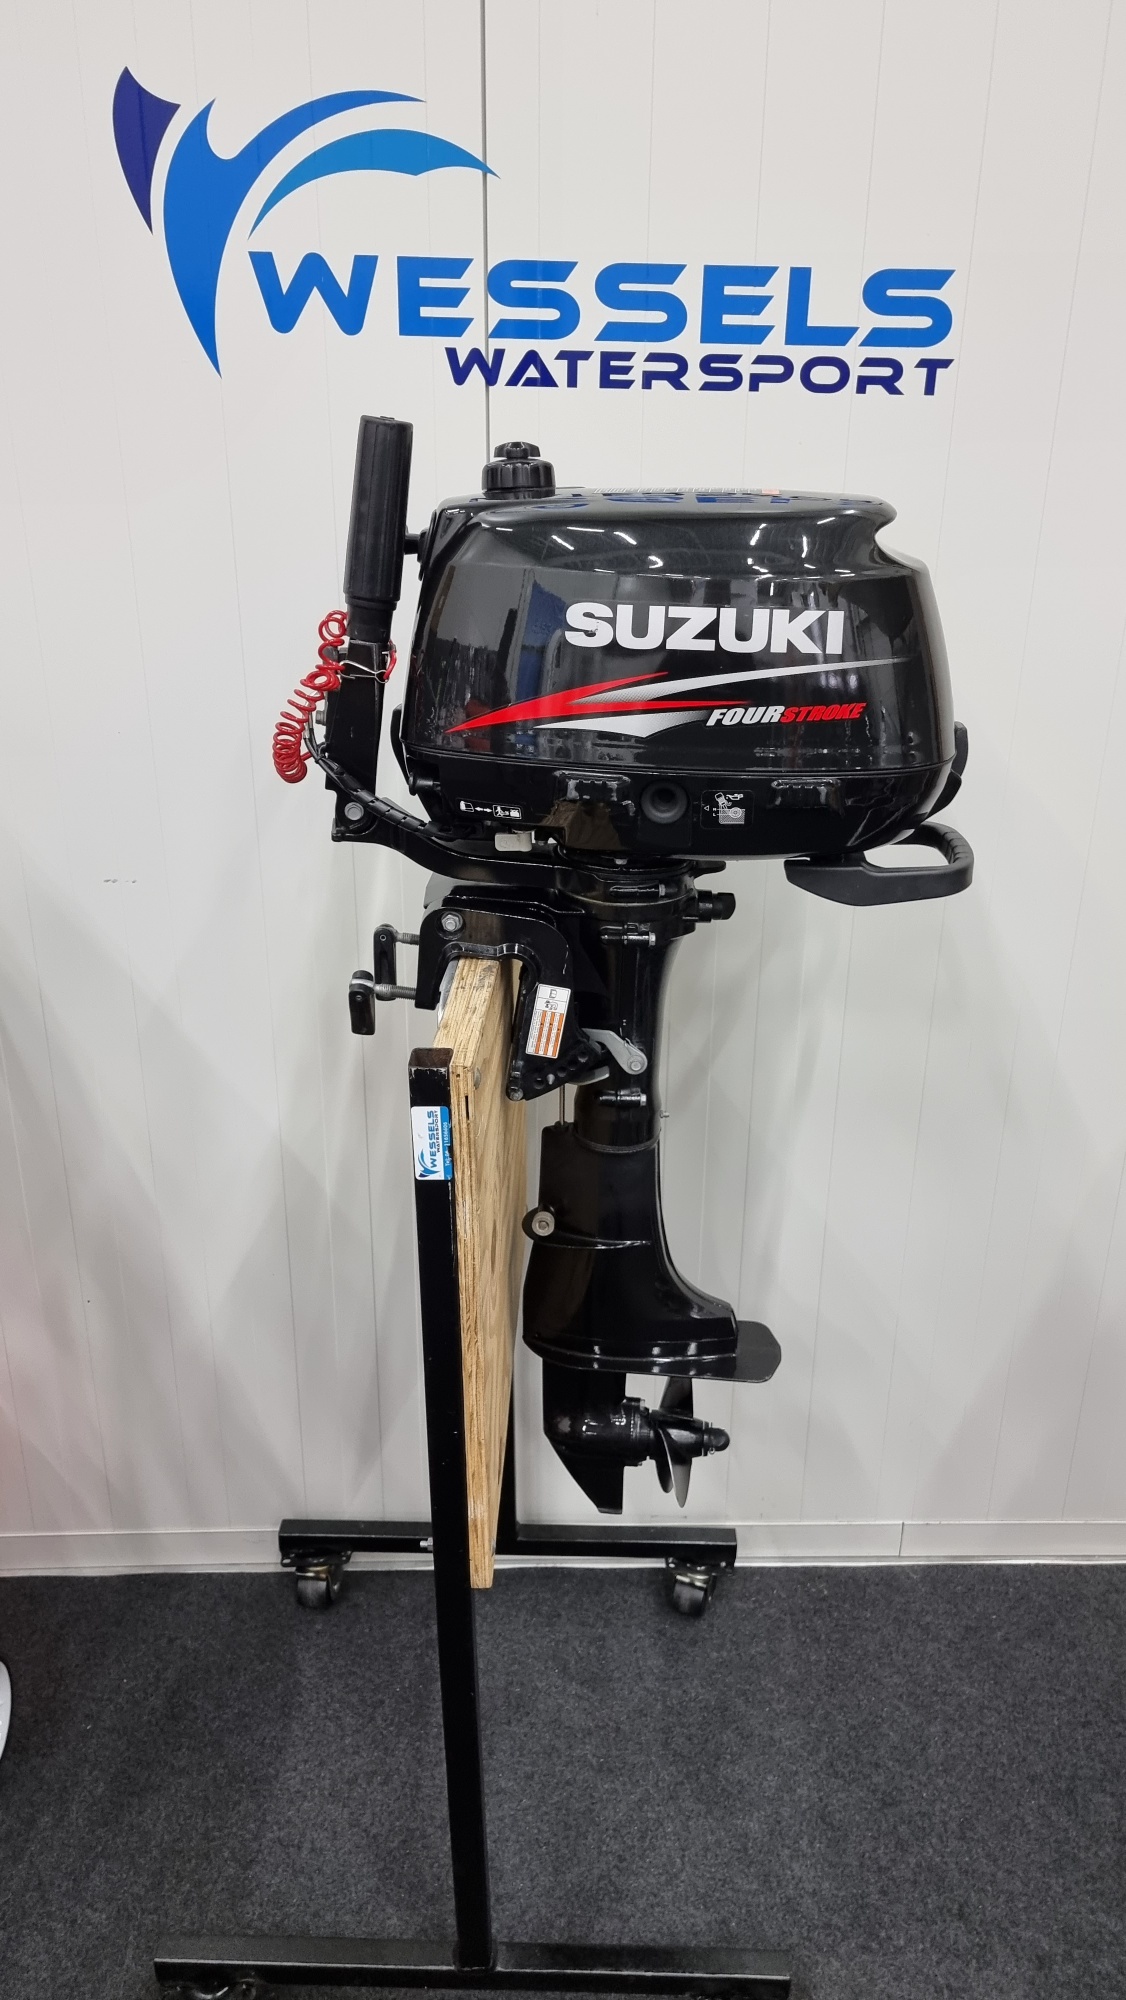 Suzuki DF5 2012 | Wessels Watersport | 20220909 100255 resized